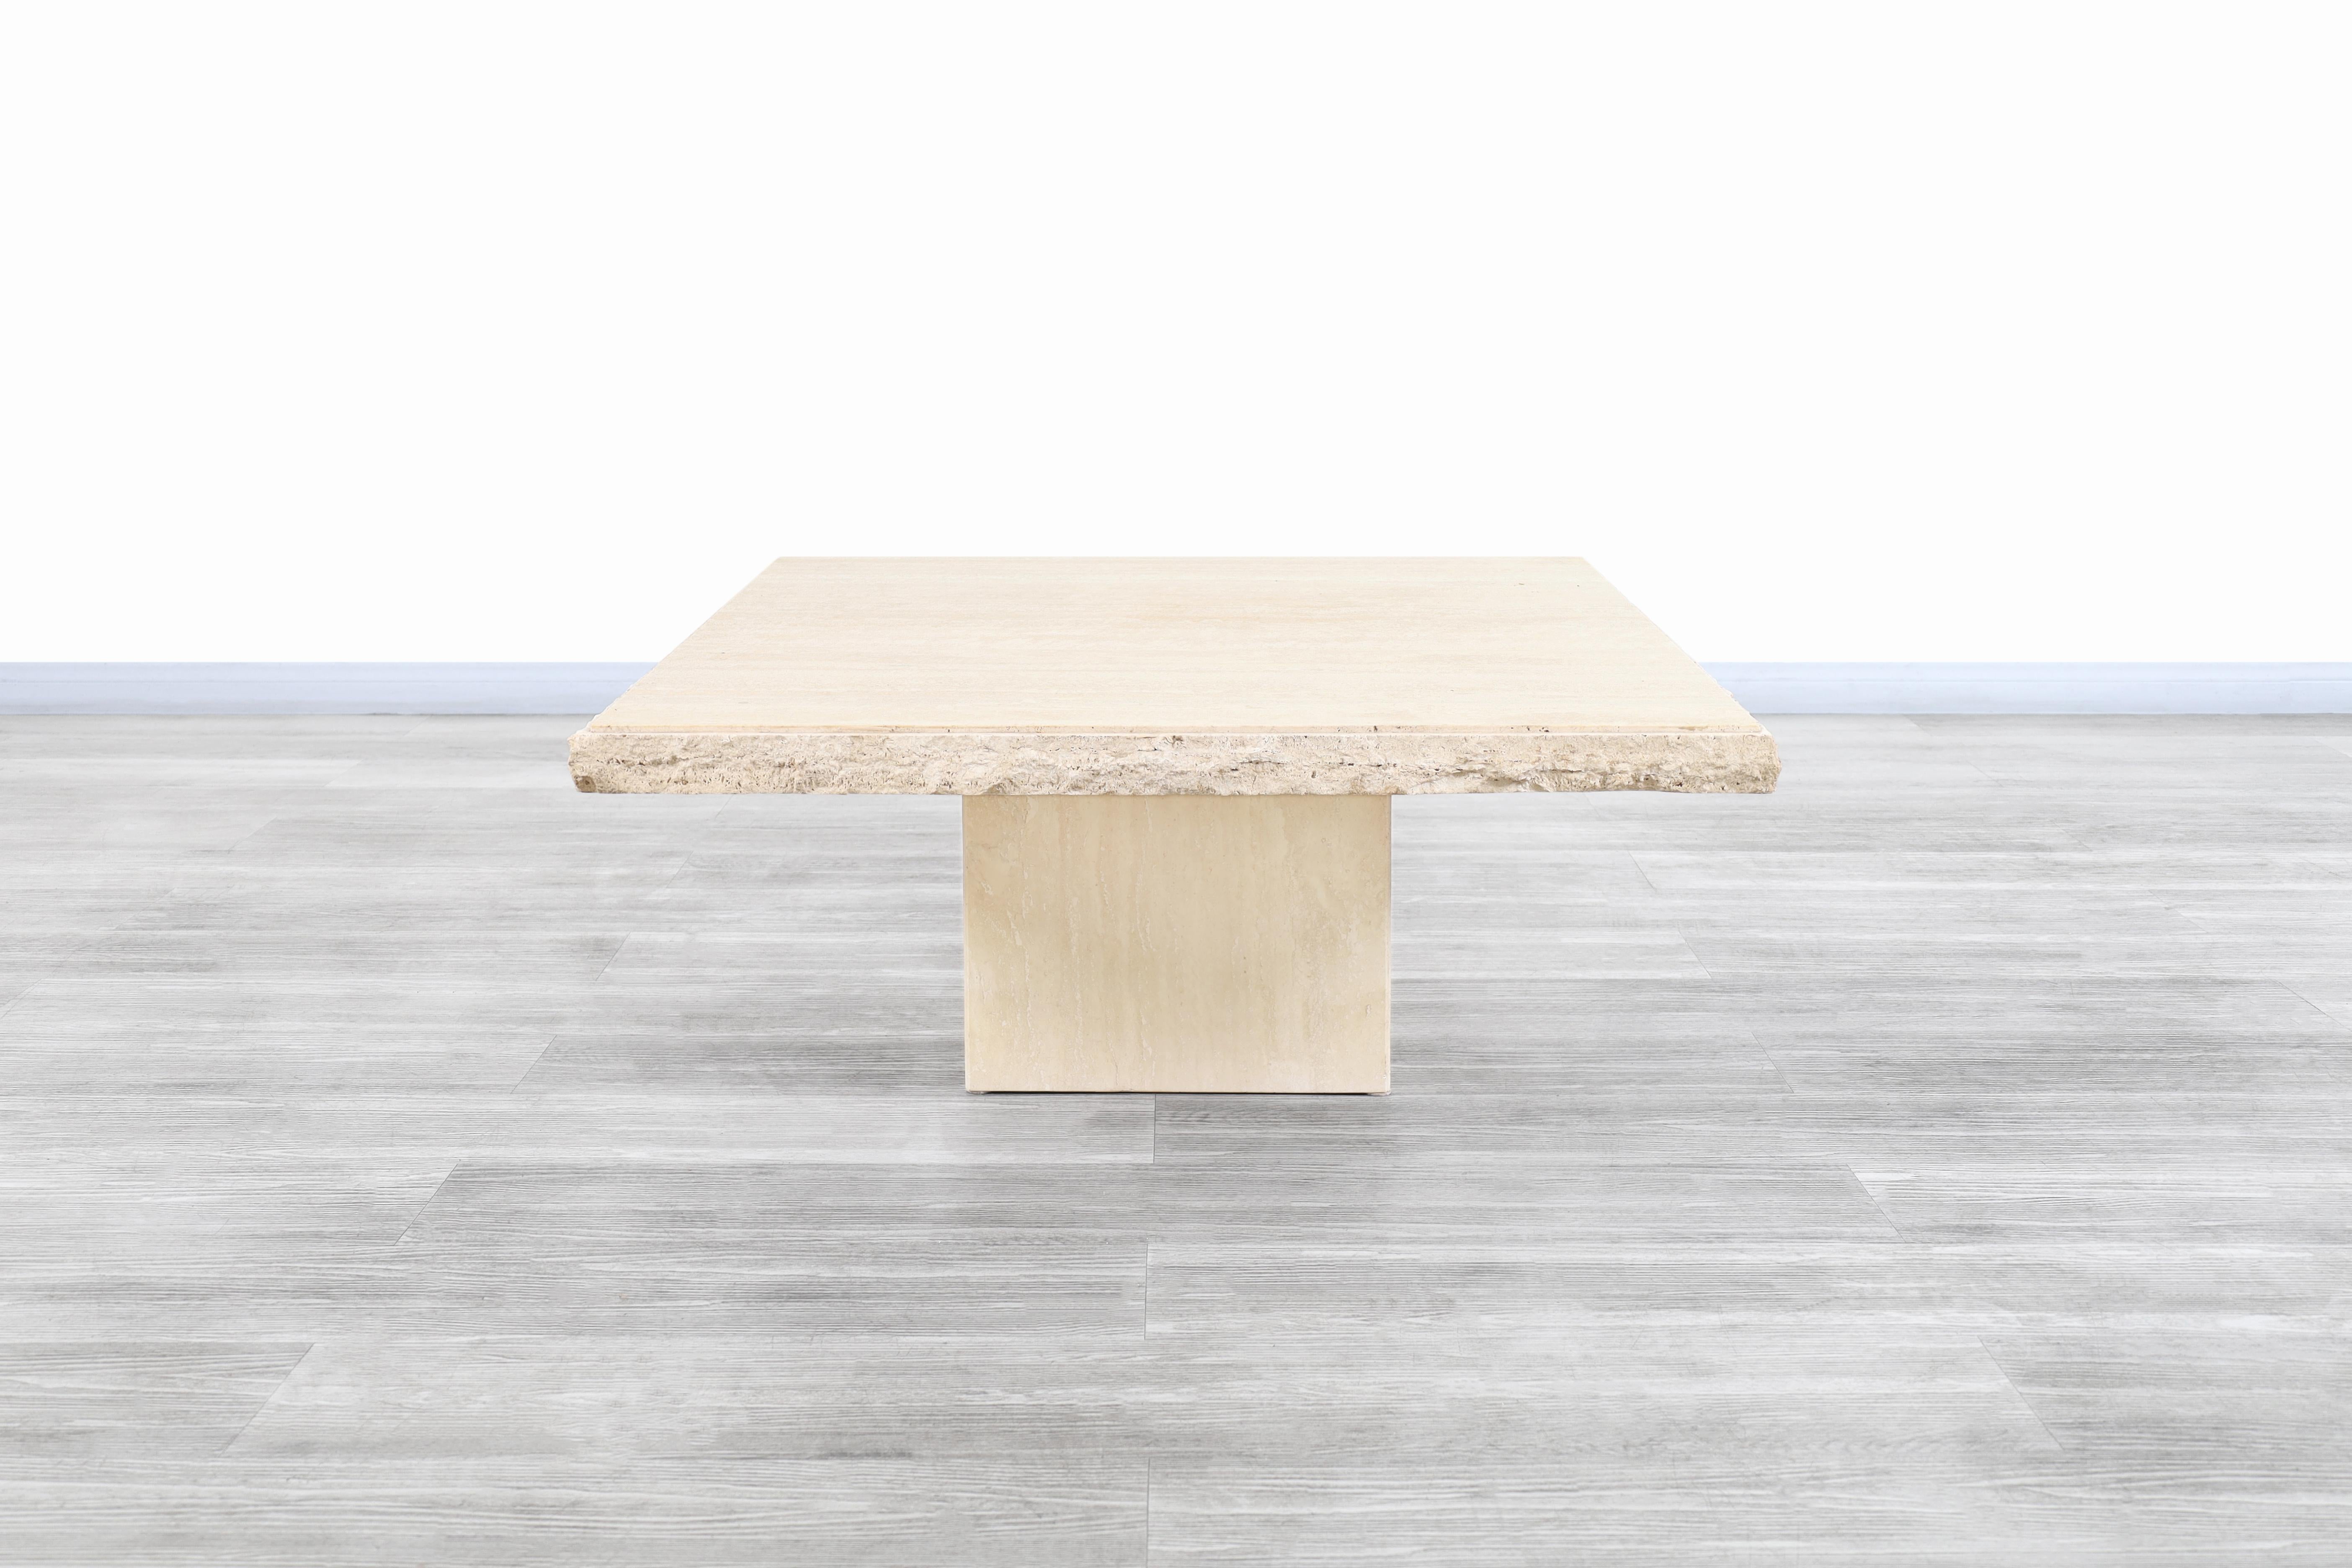 Merveilleuses tables basses en travertin de style moderniste italien, conçues et fabriquées en Italie, vers les années 1970. Le design moderniste est parfaitement complété par les minéraux naturels de la pierre travertin. La table est dotée d'un